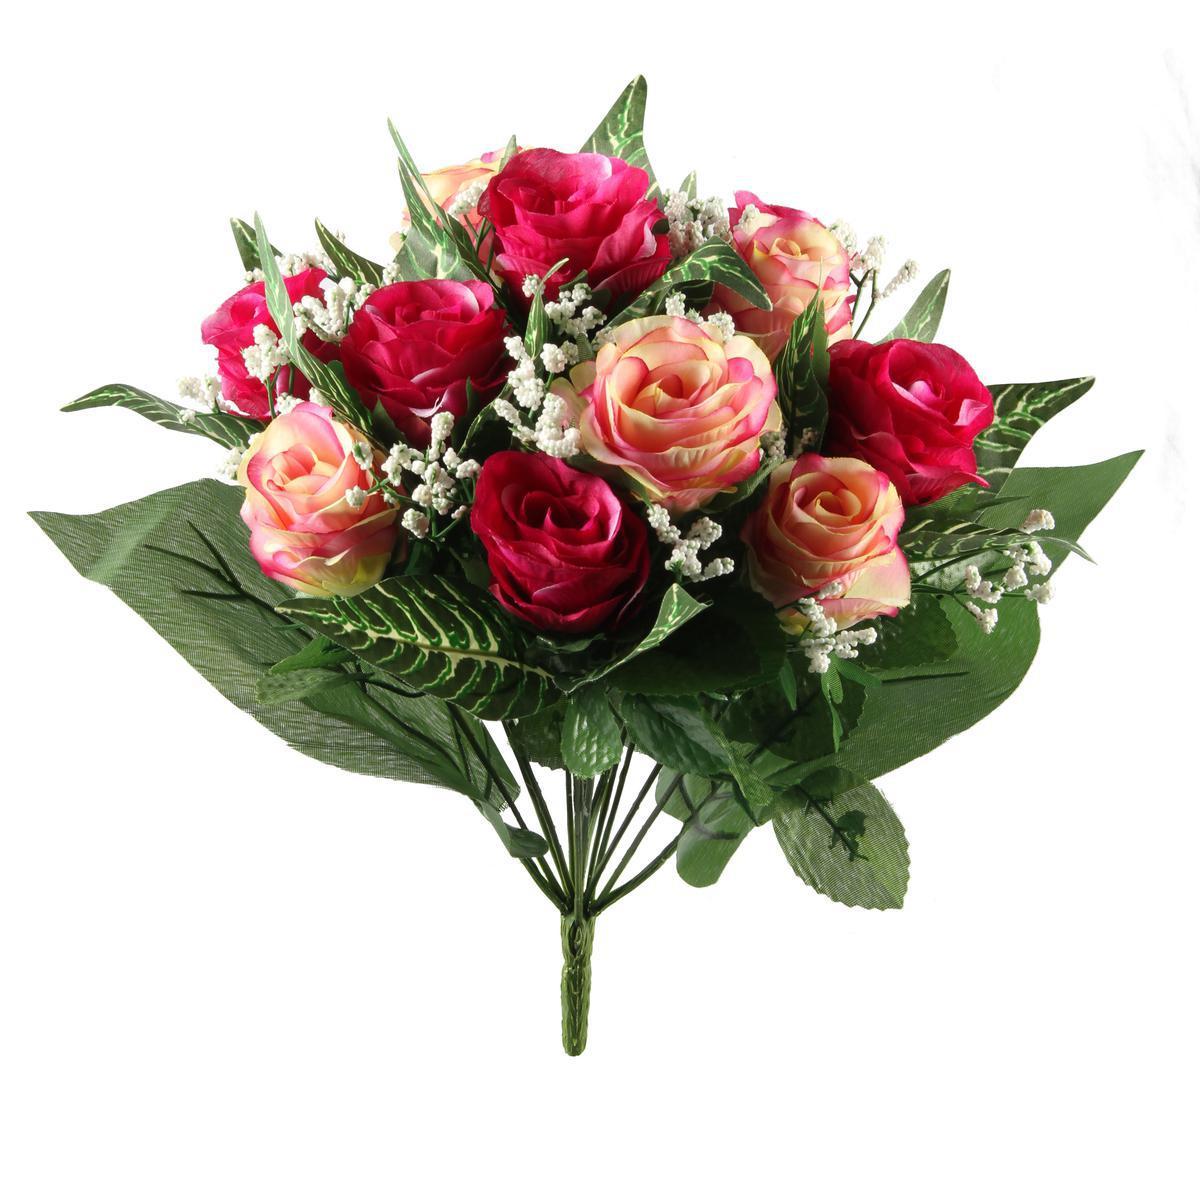 Bouquet de 12 roses et gypso - Plastique et polyester - Hauteur 36 cm - Rose, rouge et jaune